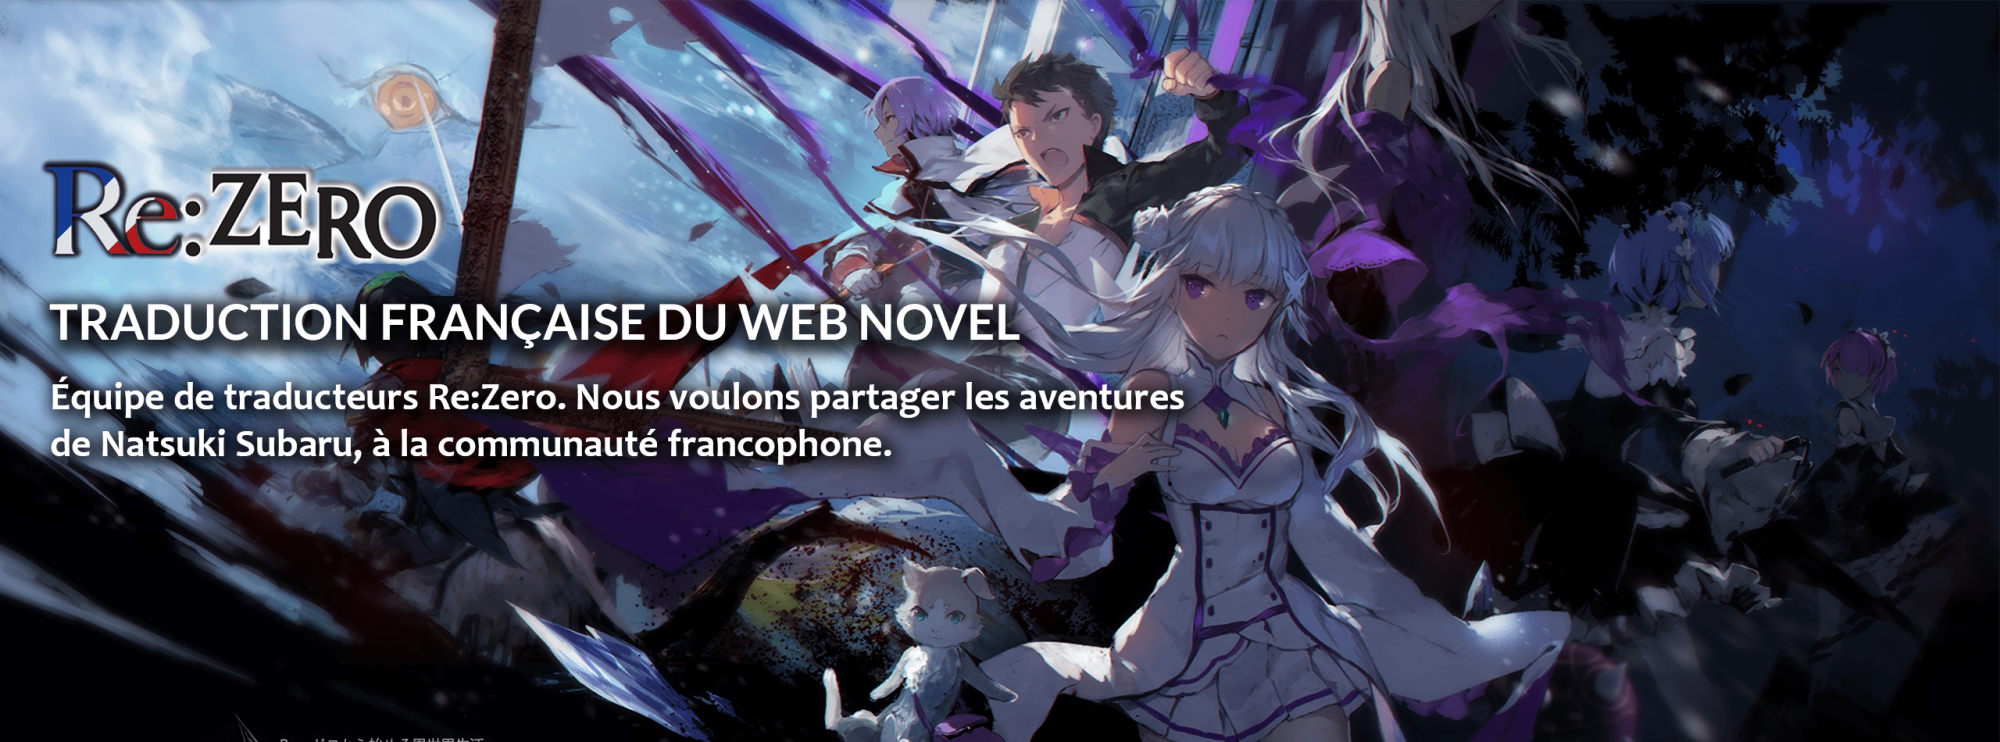 emilia subaru rezero if scan rezero fr web novel saison 3